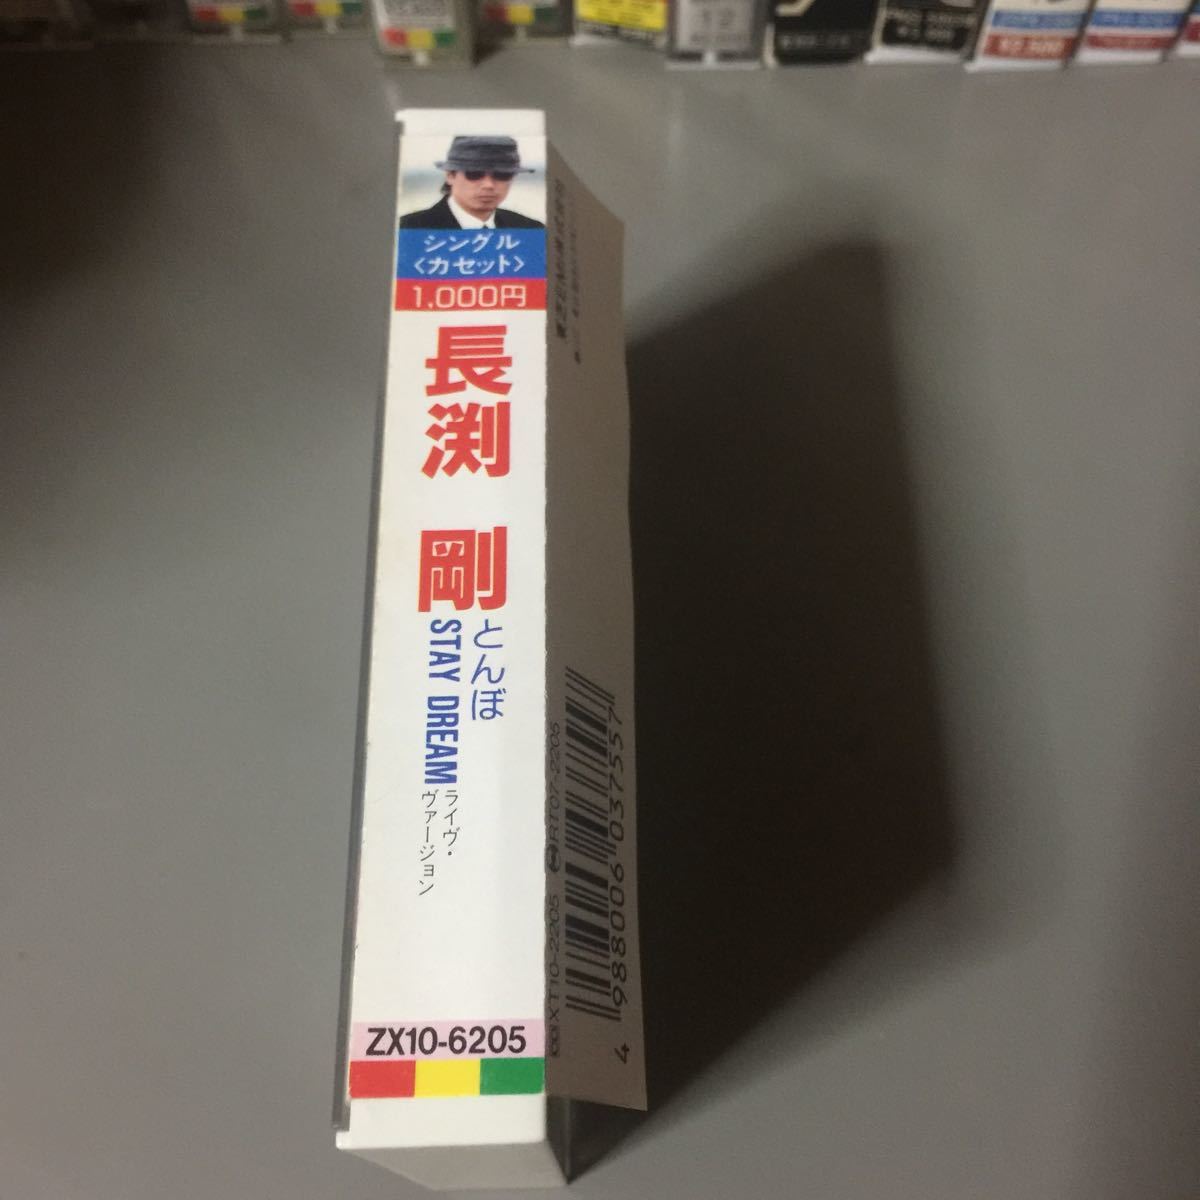 長渕剛 とんぼSTAY DREAM国内盤シングルカセットテープ ジャパニーズ